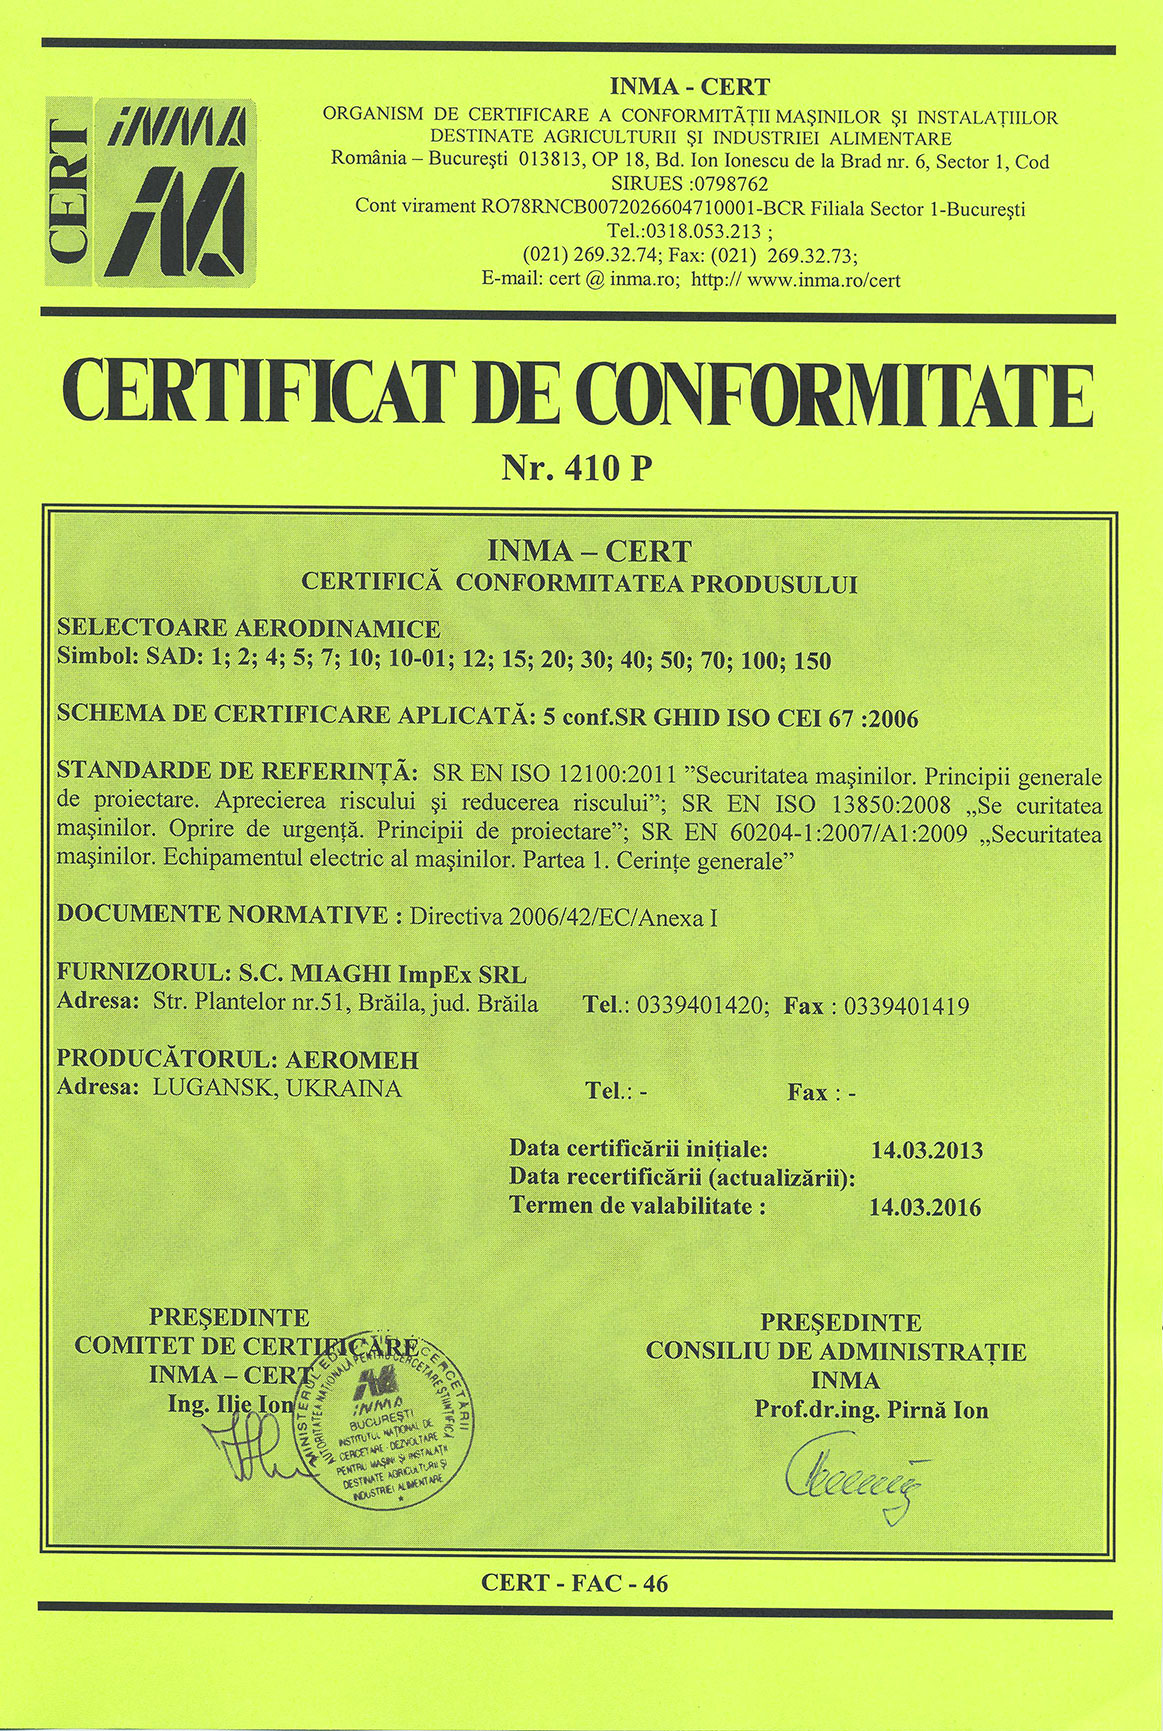 Le certificat donne la possibilité de marquer les séparateurs par le signe CE.